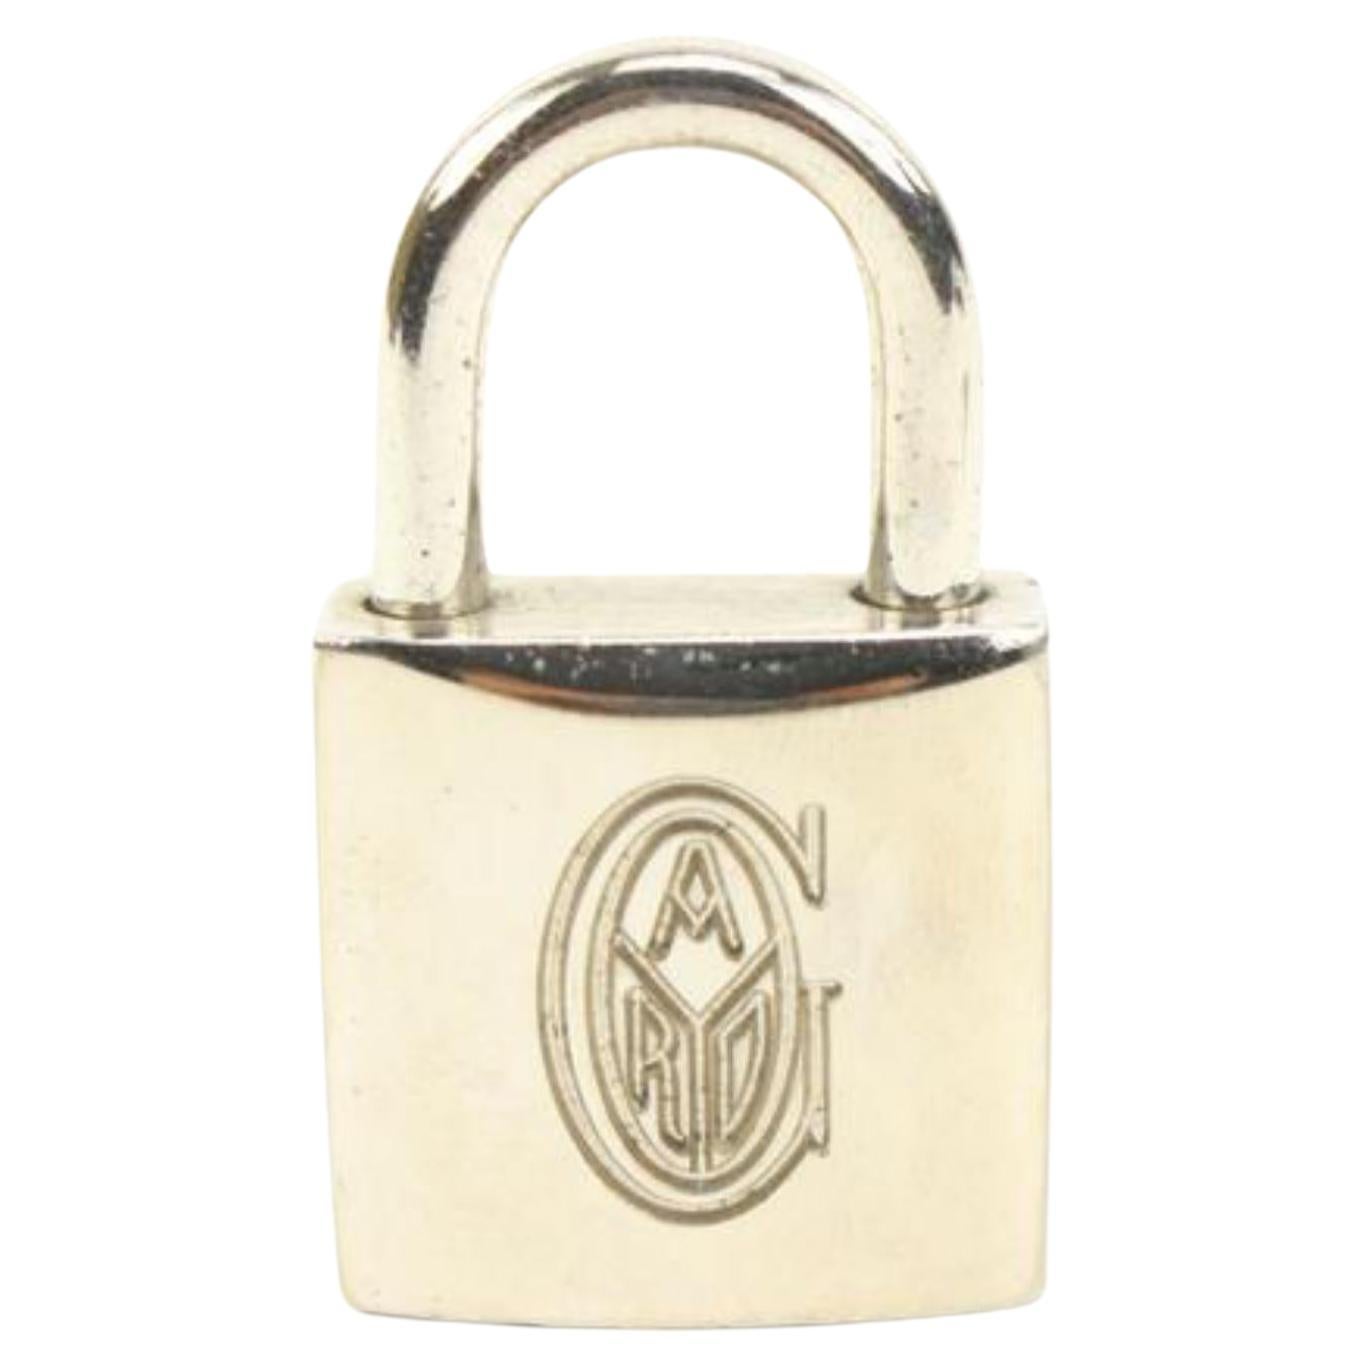 LOUIS VUITTON Padlock & Key Bag Accessories Charm 10 Piece Set